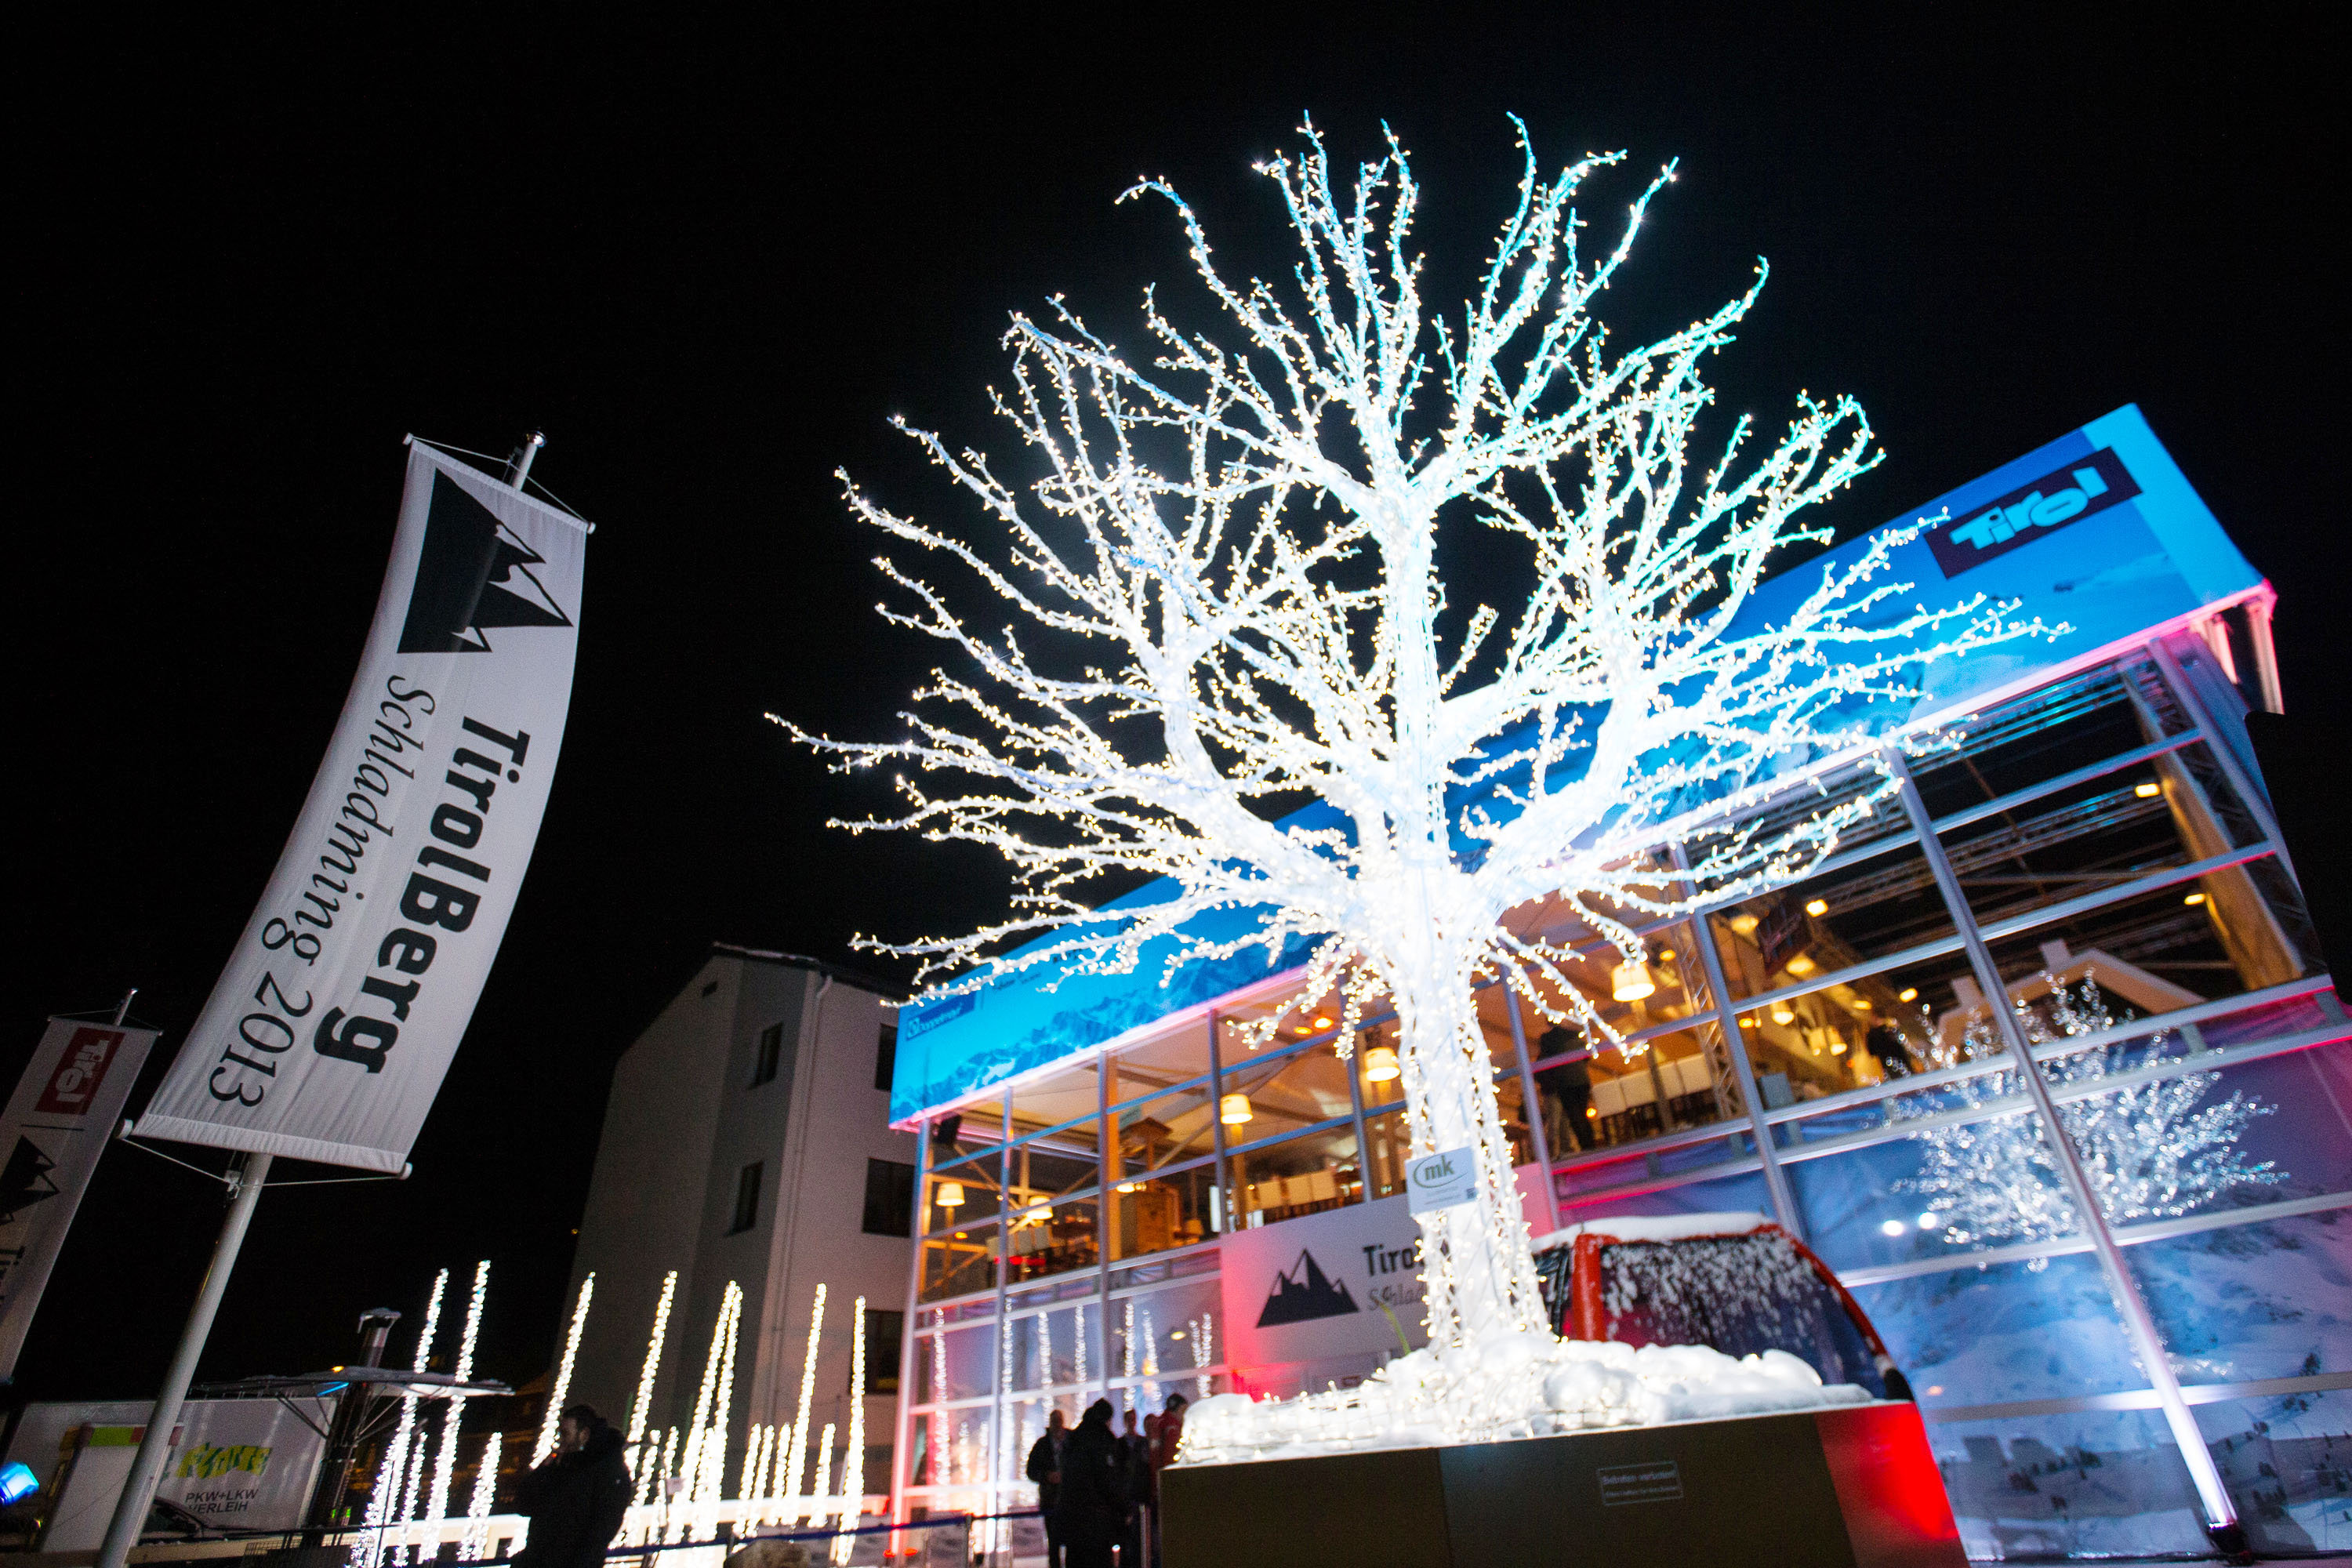 An 15 Tagen und im Rahmen von 33 (Firmen-)Events wurden in der Außenstelle Tirols die Vorzüge des Landes und seiner Spitzenleister präsentiert, Weltmeister gefeiert, neue Kontakte geknüpft und bestehende gepflegt. Nächste Station des TirolBergs soll bei den Olympischen Winterspielen in Sotschi 2014 sein.